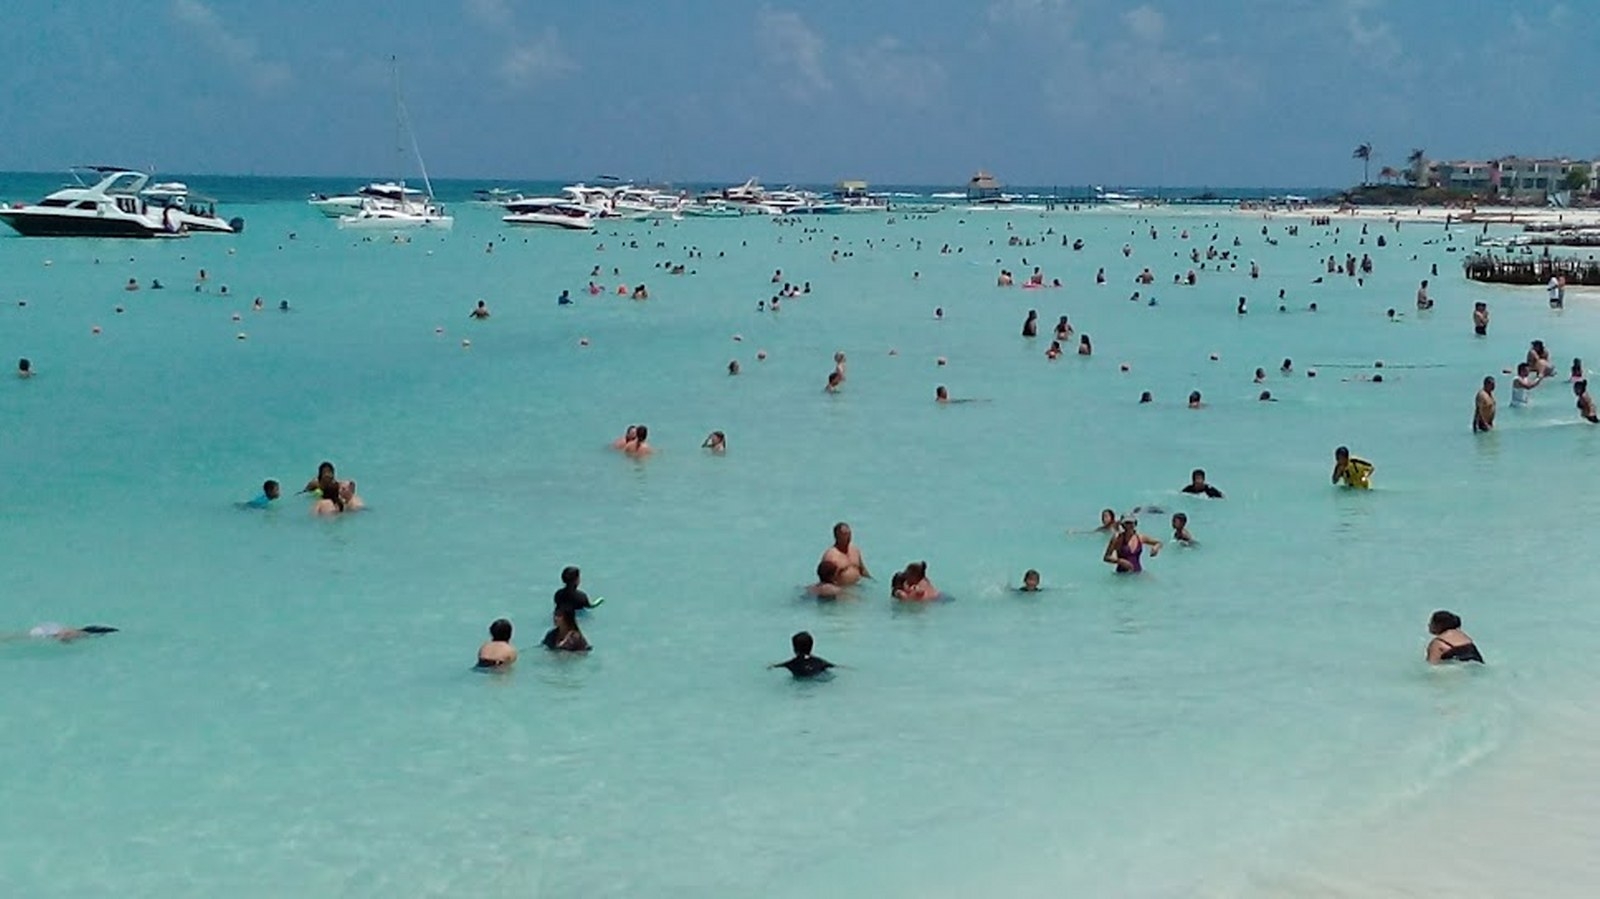 Abren al público 28 playas por vacaciones decembrinas en Quintana Roo